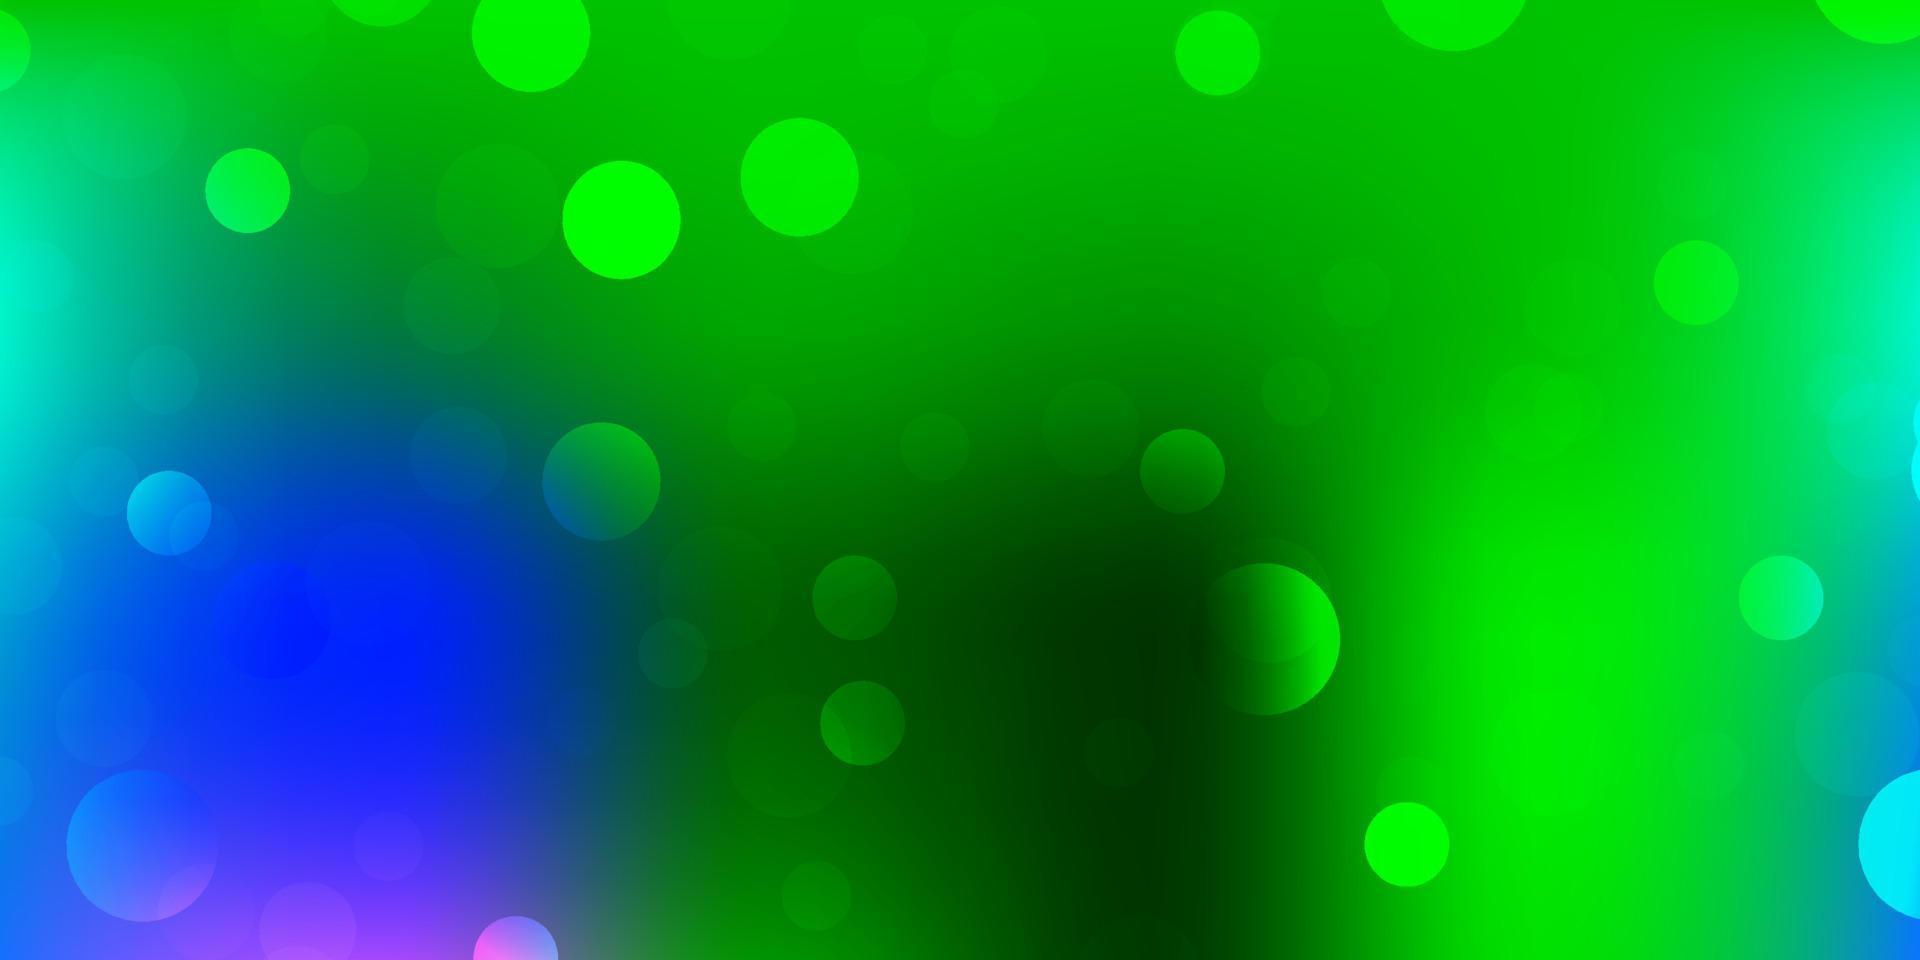 ljusrosa, gröna vektormall med abstrakta former. vektor